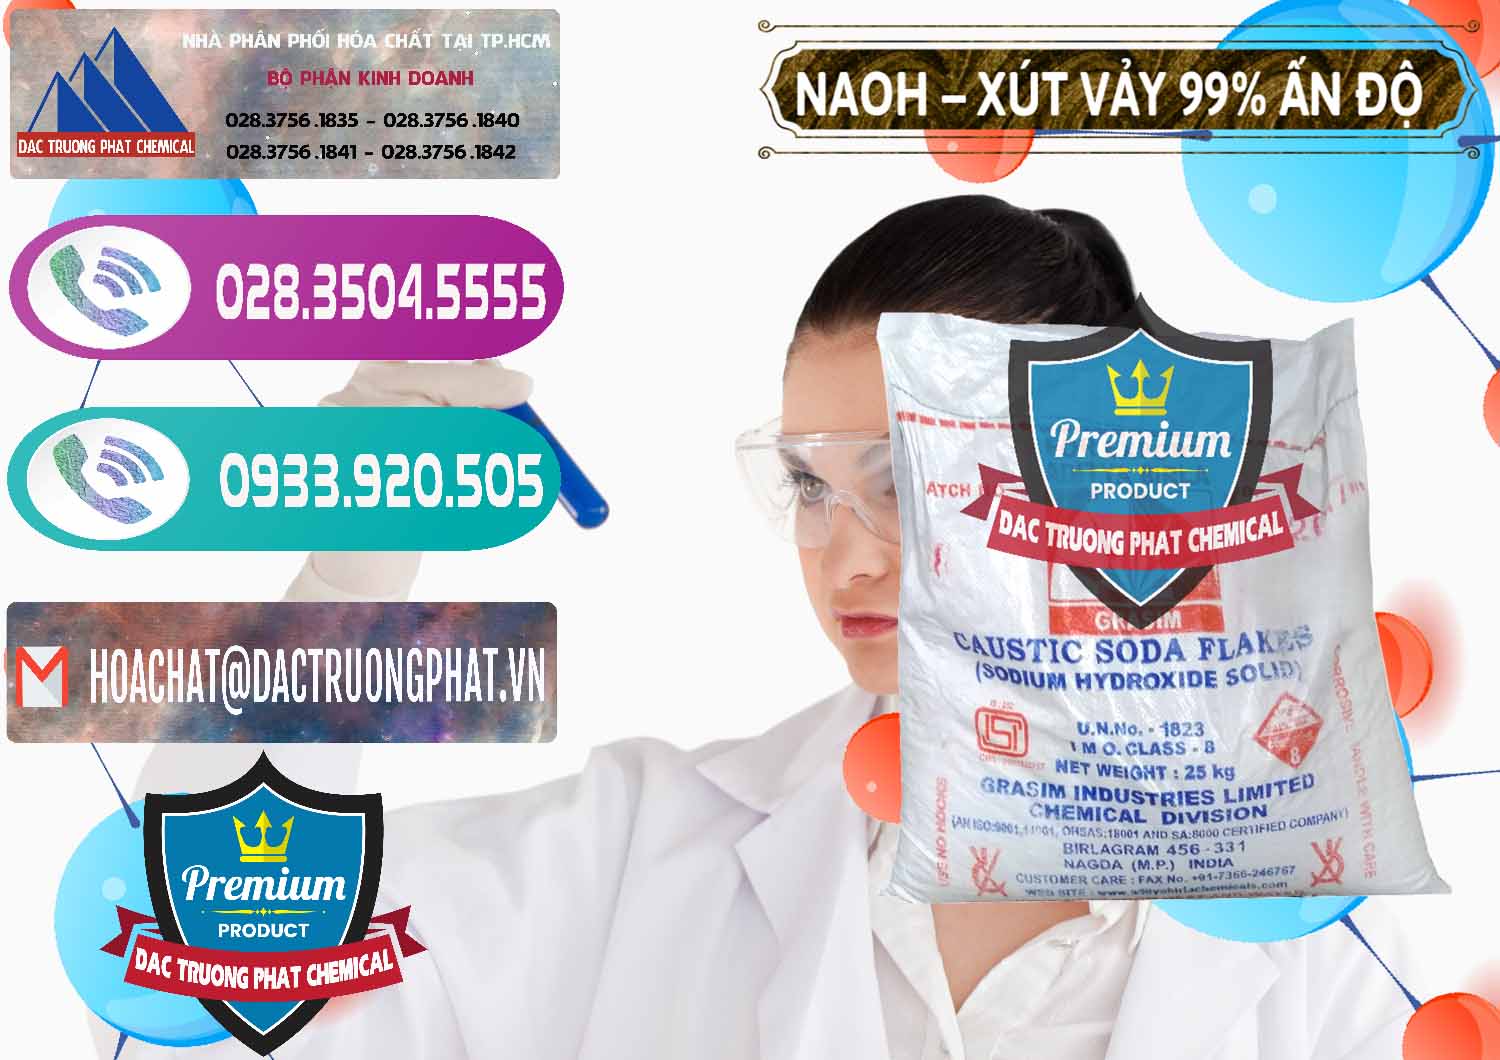 Công ty cung ứng ( bán ) Xút Vảy - NaOH Vảy 99% Aditya Birla Grasim Ấn Độ India - 0171 - Phân phối - cung cấp hóa chất tại TP.HCM - hoachatxulynuoc.com